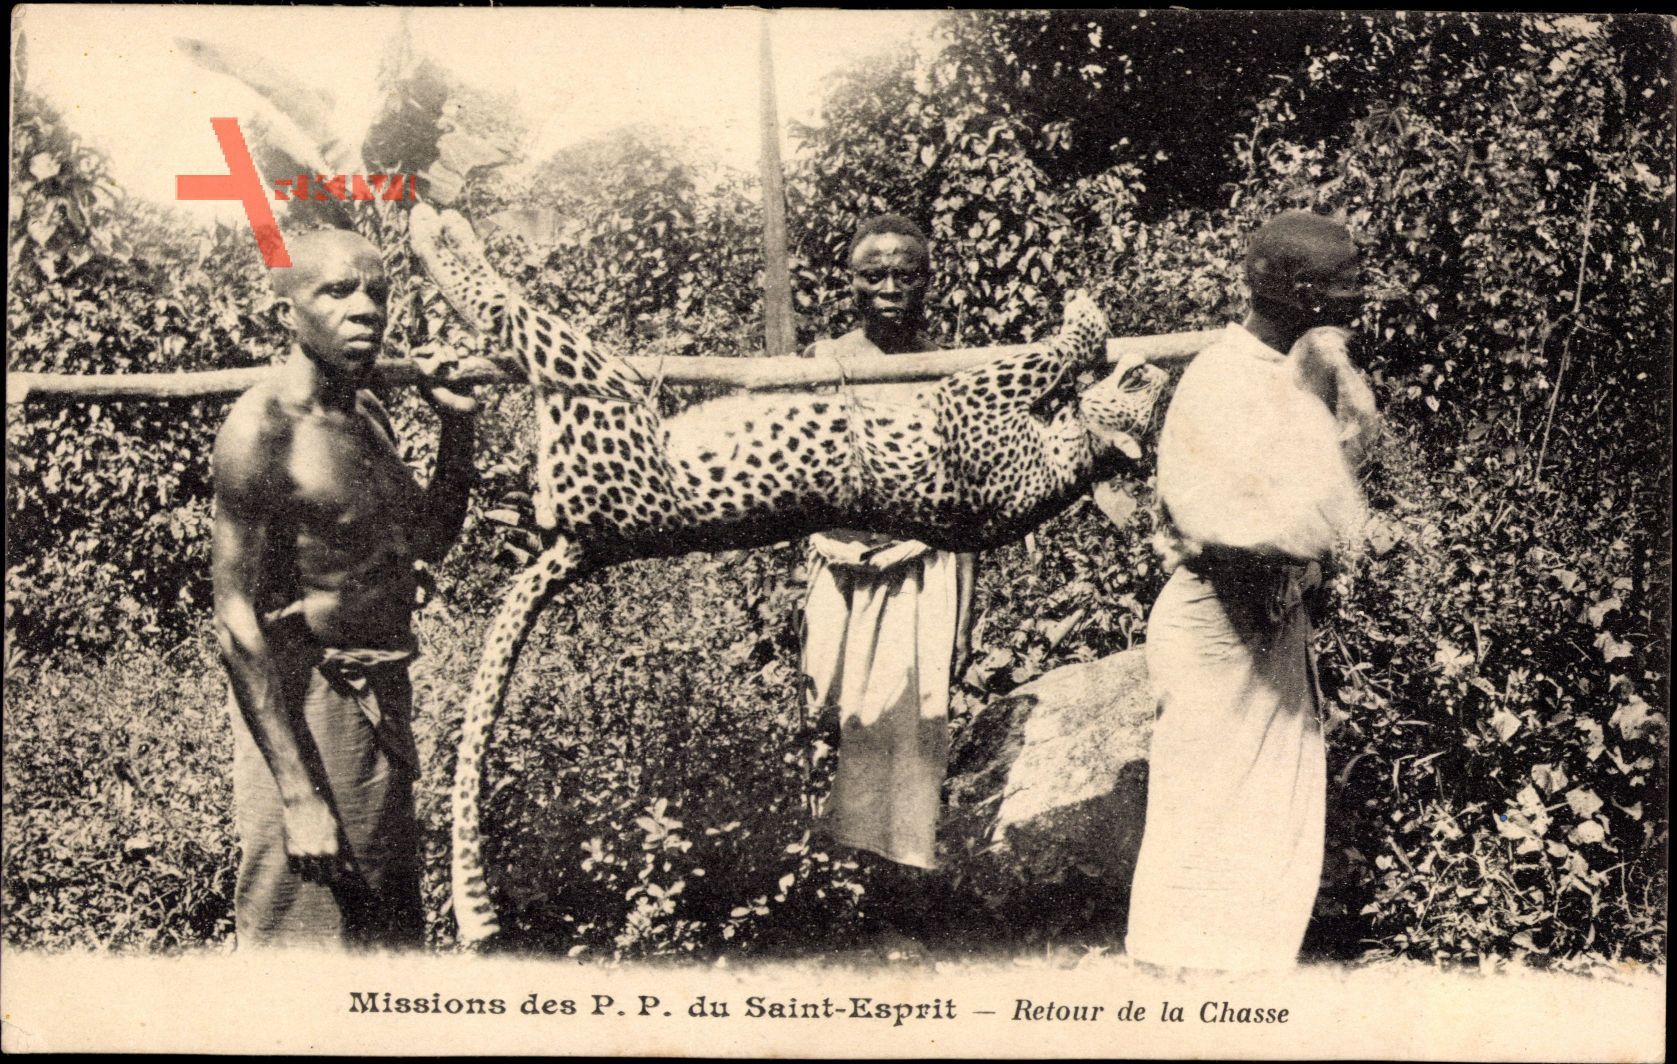 Afrika, Missions des PP du Saint Esprit, Retour de la Chasse, Leopard